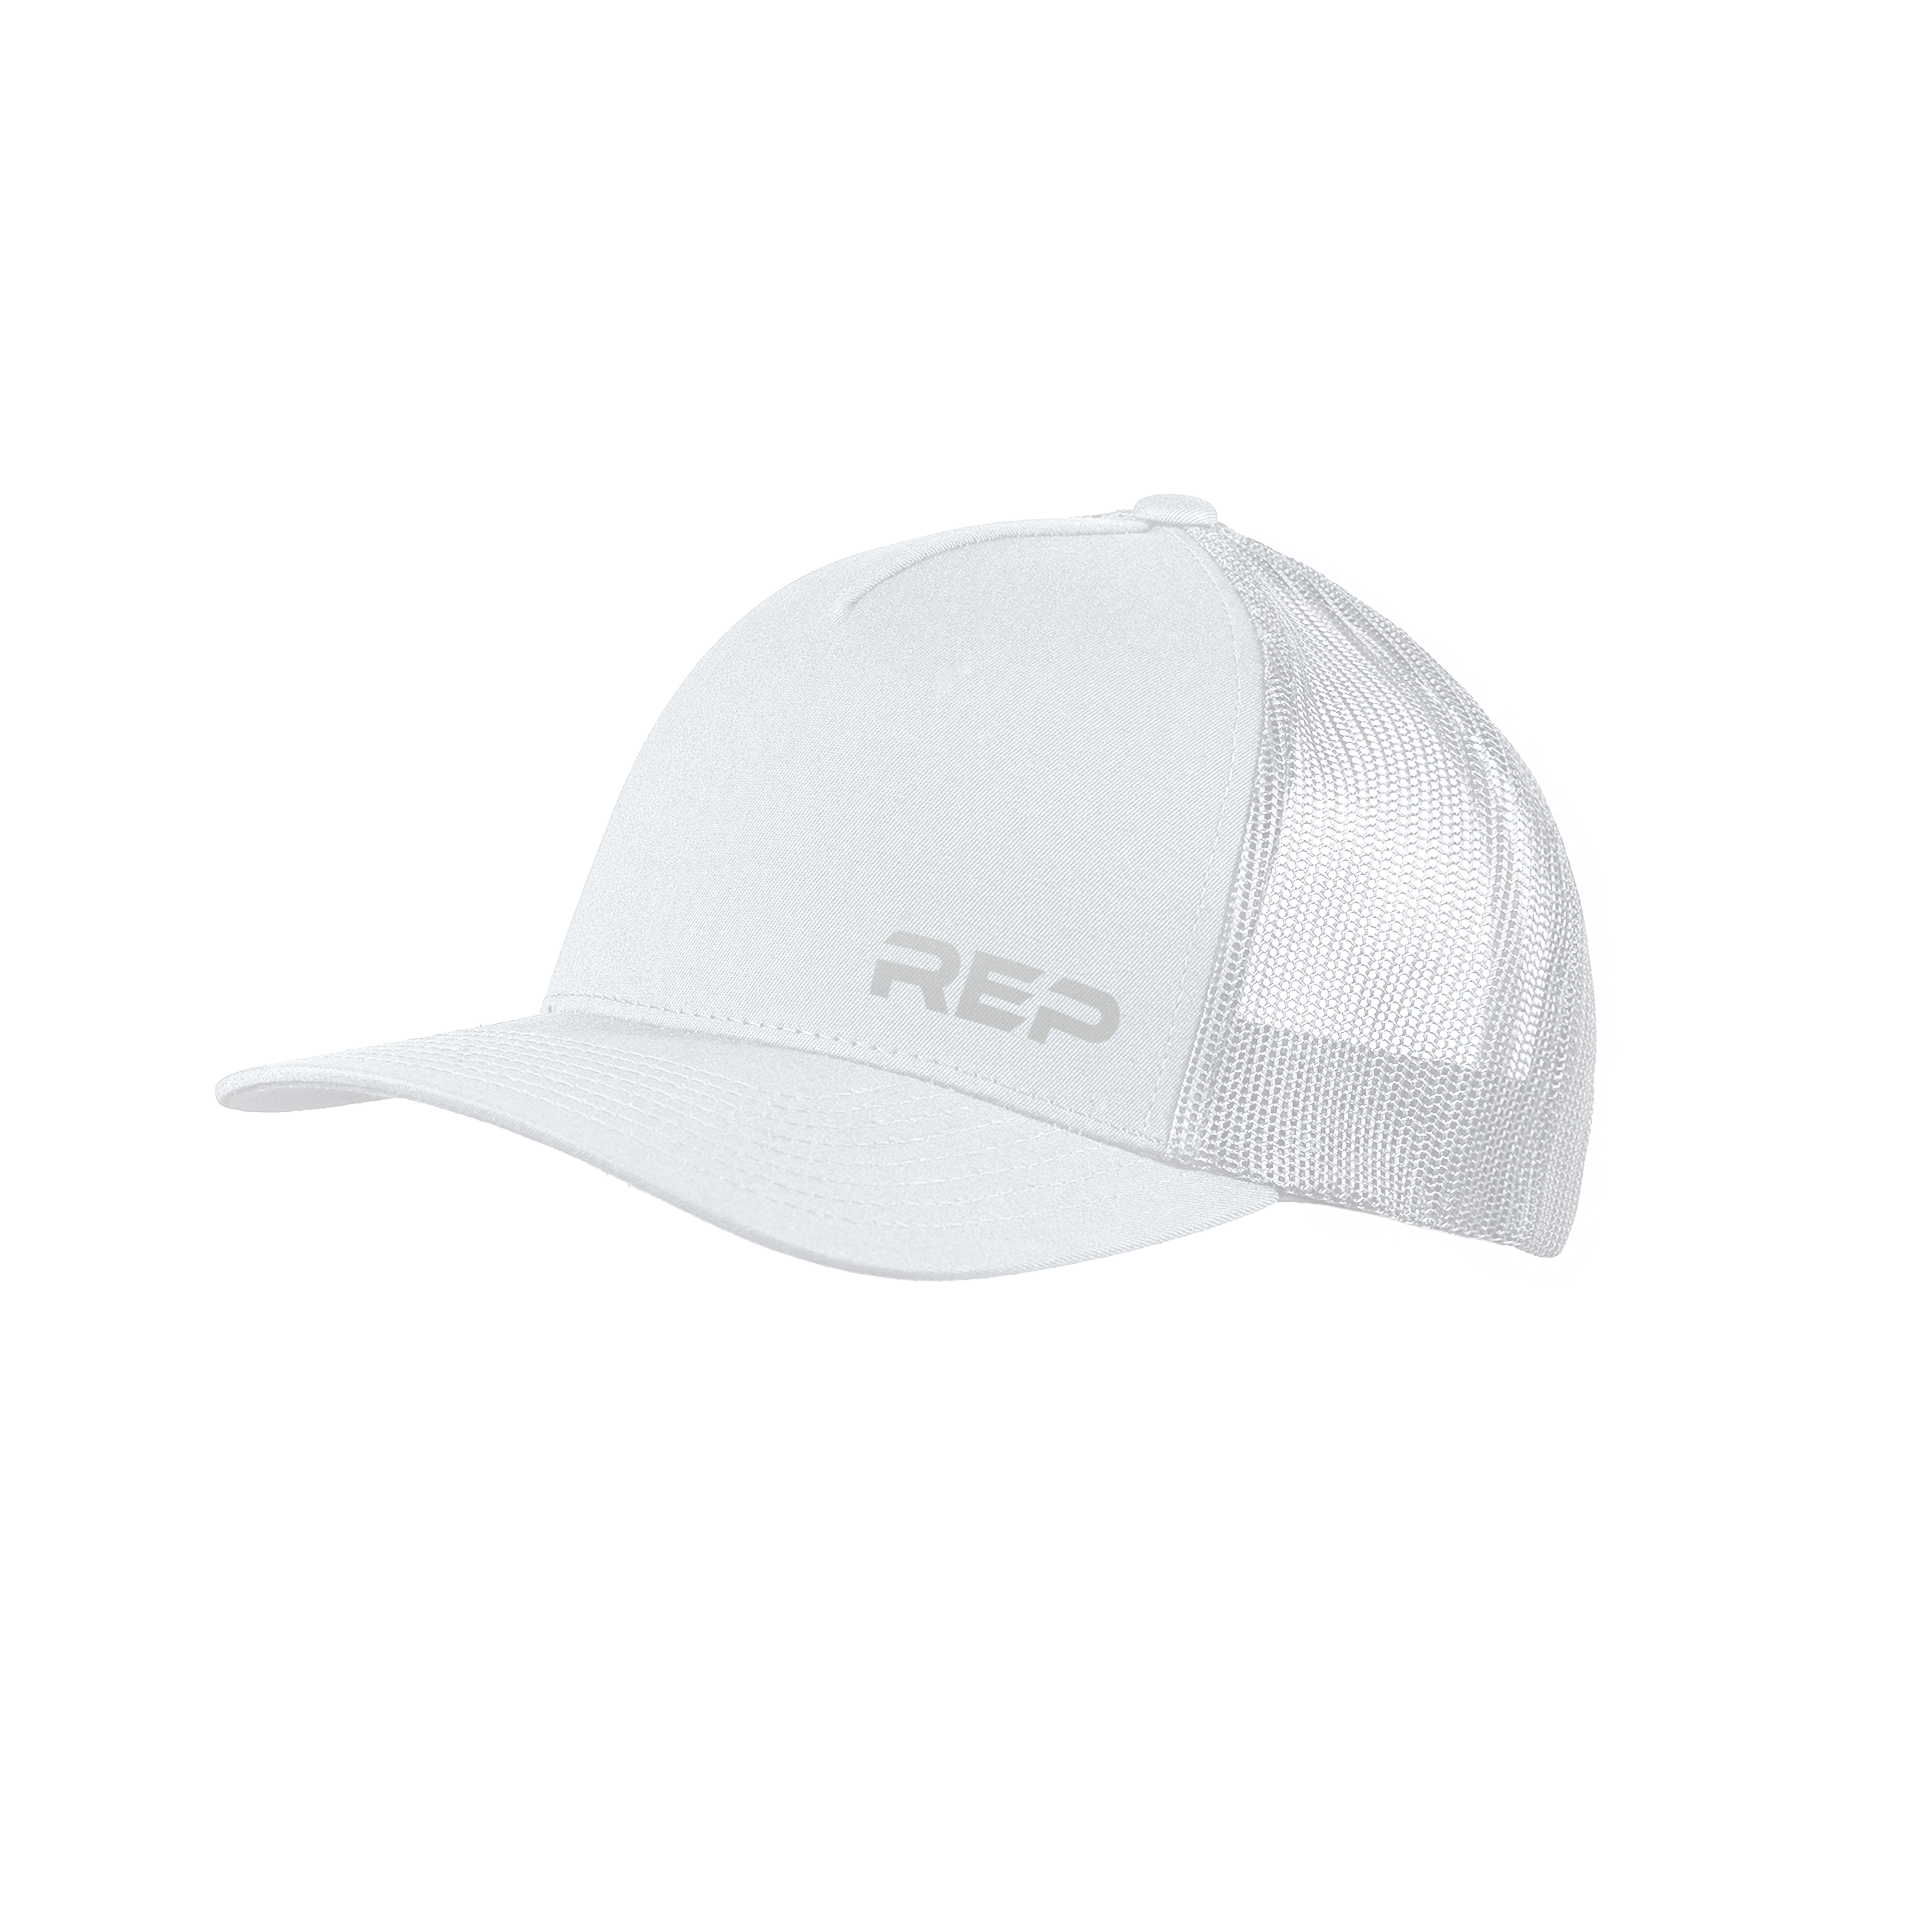 REP Cap - White/Silver / OSFM (6 5/8